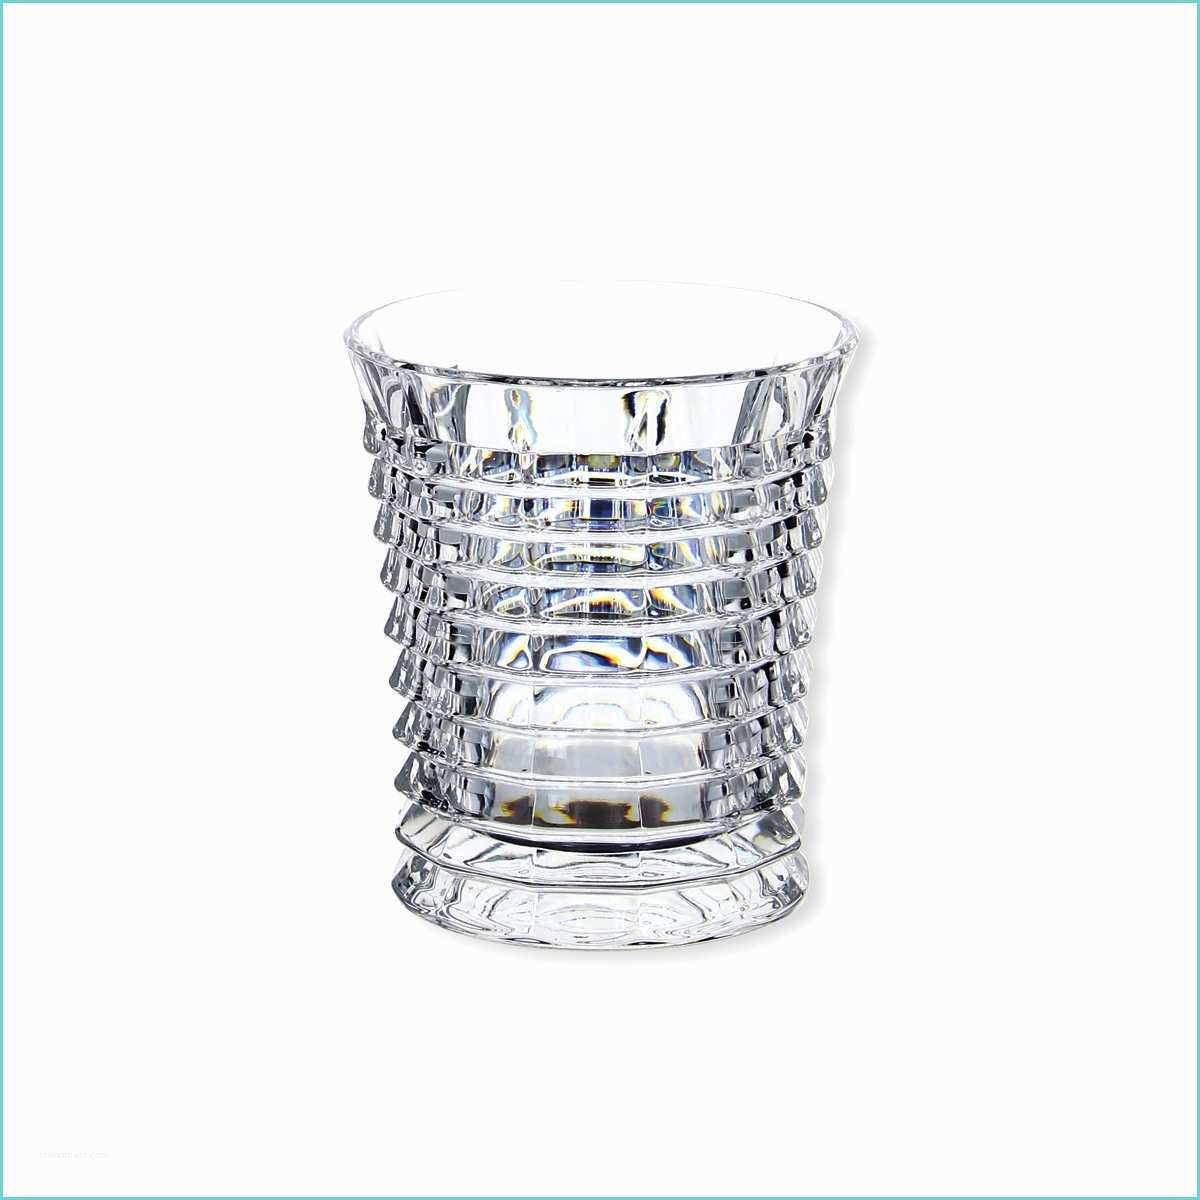 Verre Whisky En Cristal Lot De 6 Verres à Whisky En Cristal Design 30cl Bruno